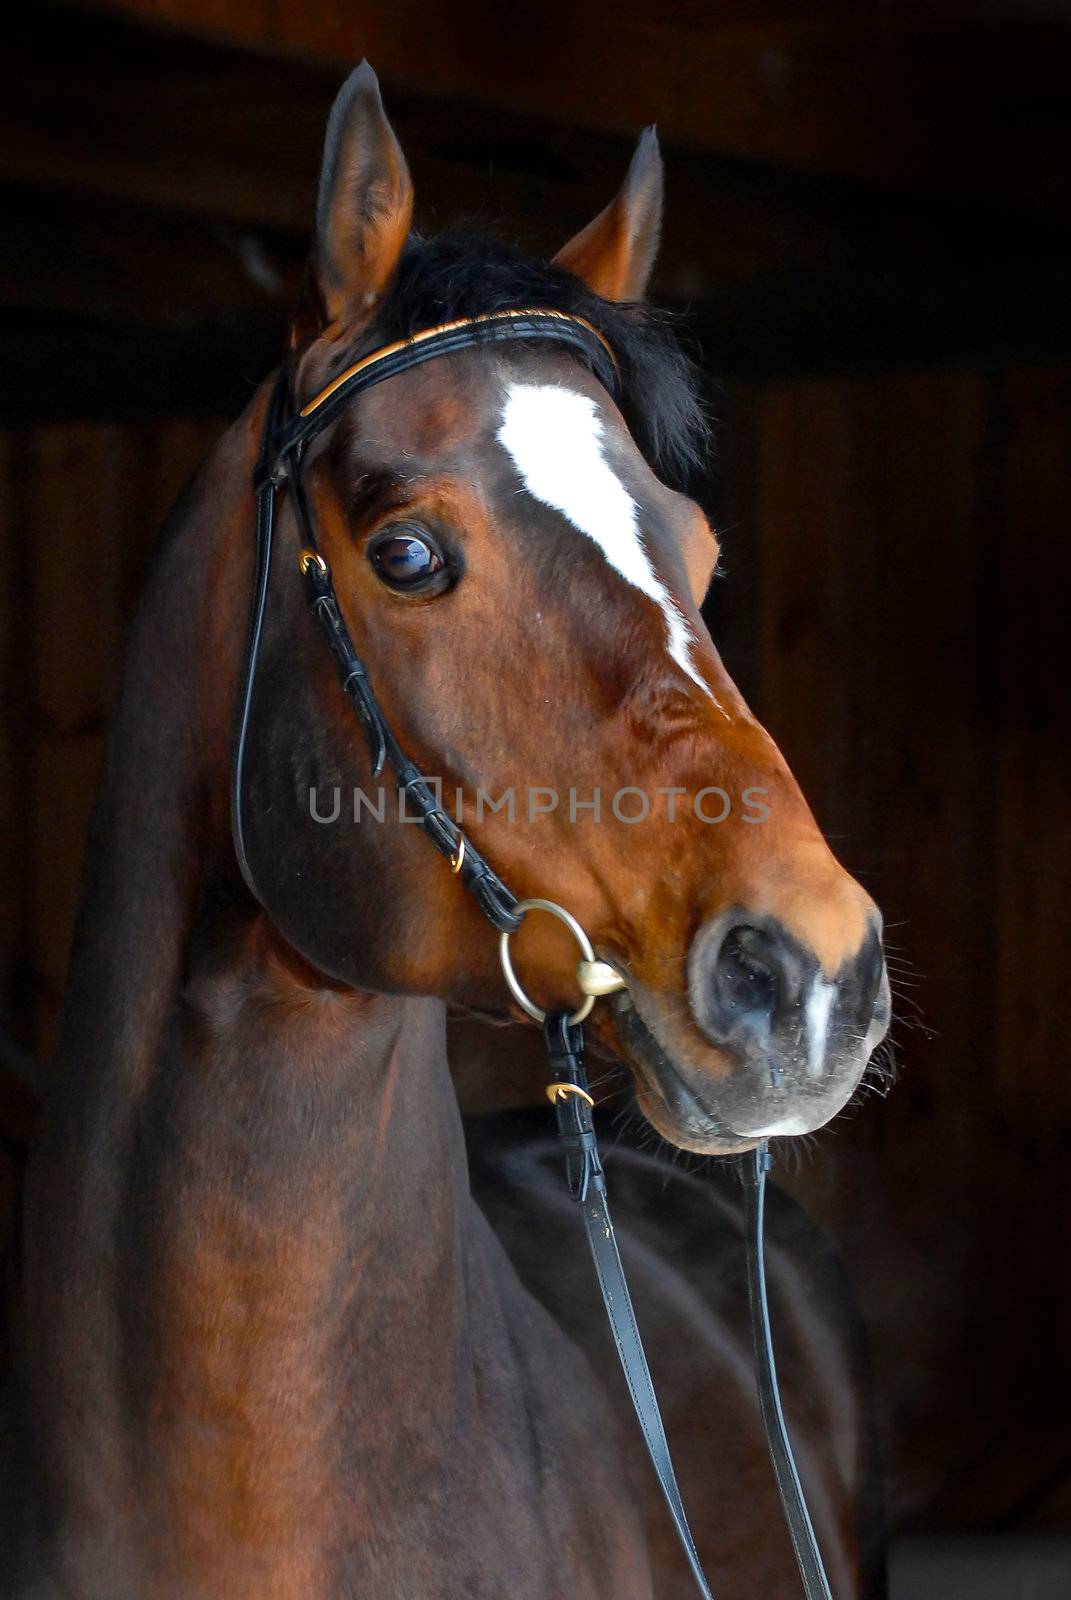 stallion - breeder horse on dark background by olgaru79